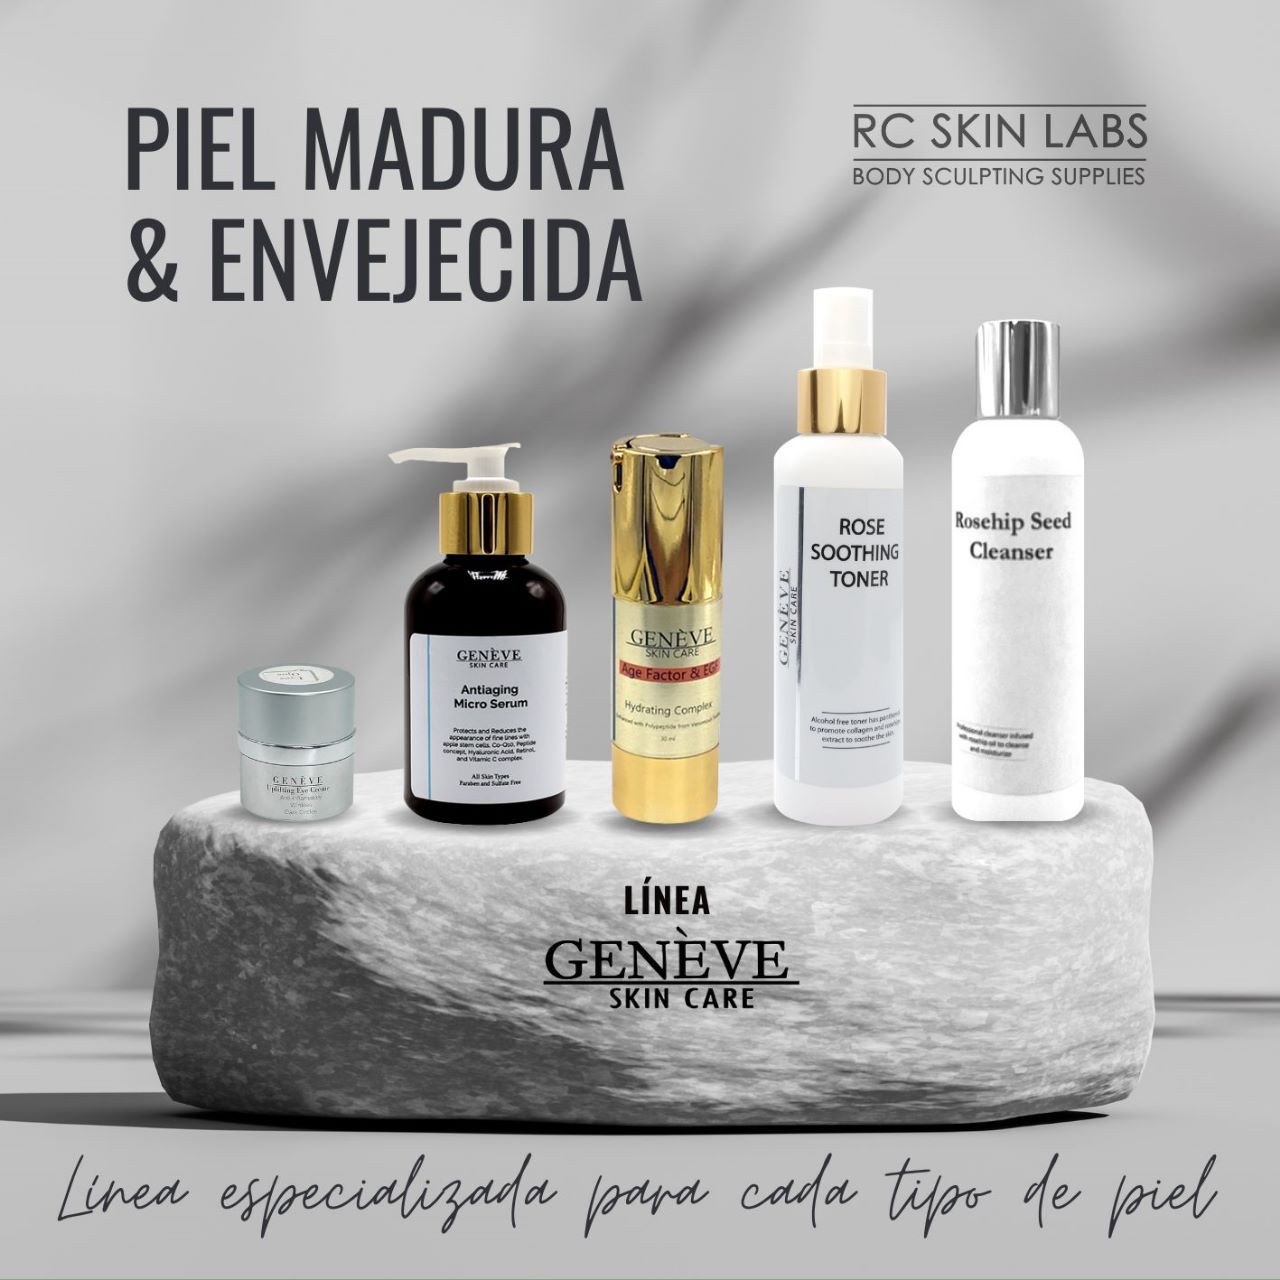 Piel Madura & Envejecida / Mature & Aged Skin